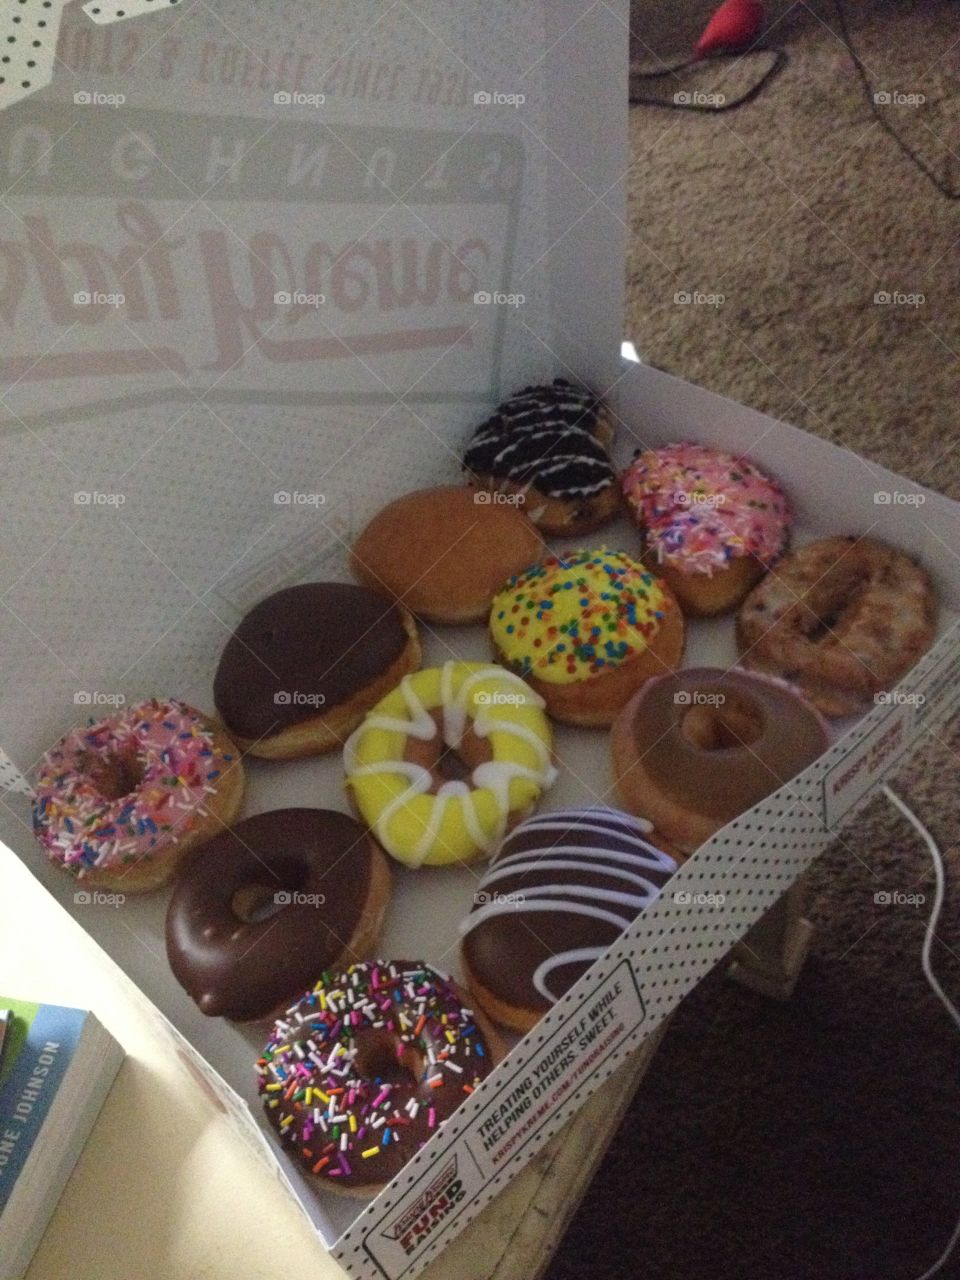 Assorted pack of 12 Krispy Kreme donuts 